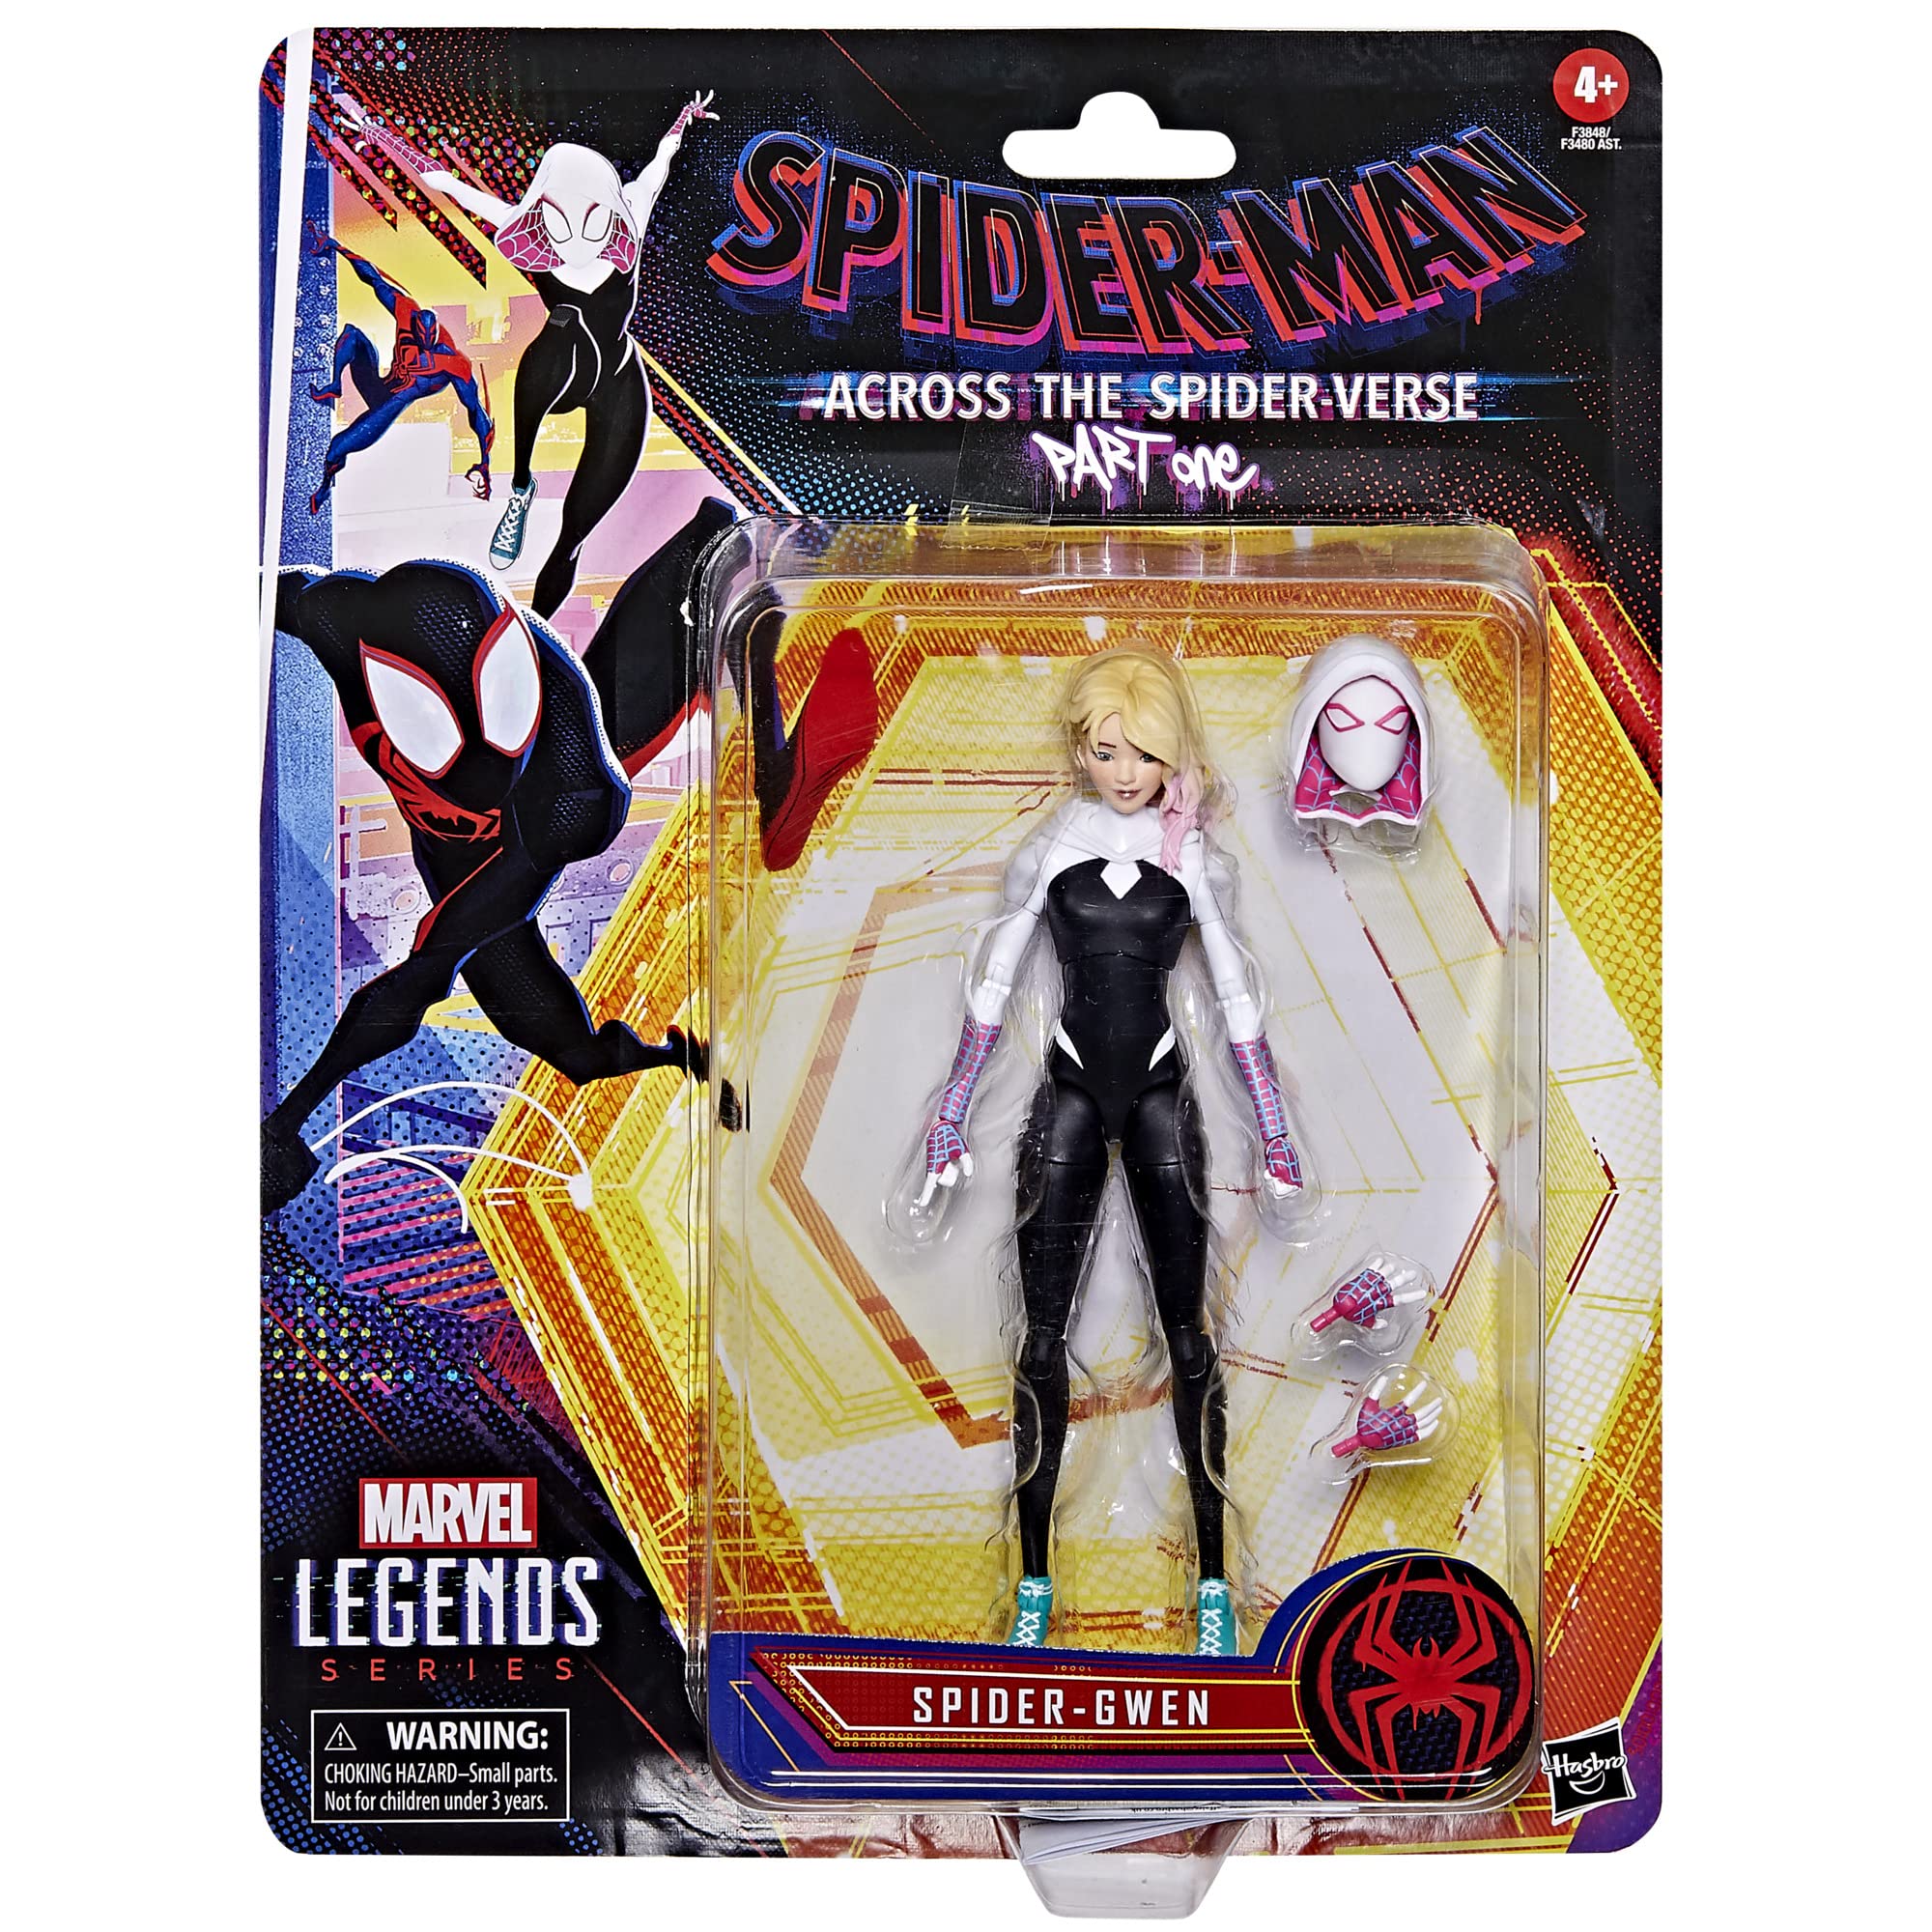 Spider-Man Marvel Legends Series Across The Spider-Verse Spider-Gwen 6-inch Action Figure Toy, 4 Accessories